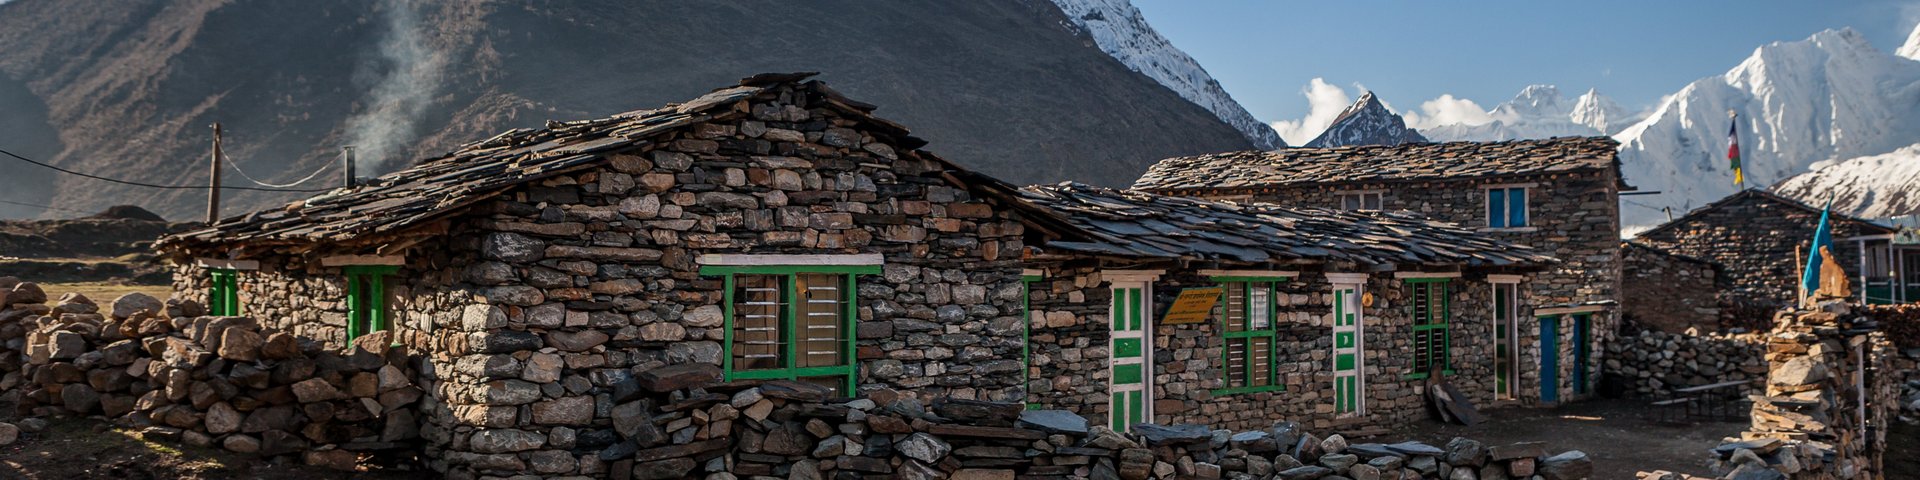 Typische Steinhäuser auf der Manaslu Umrundung in Nepal